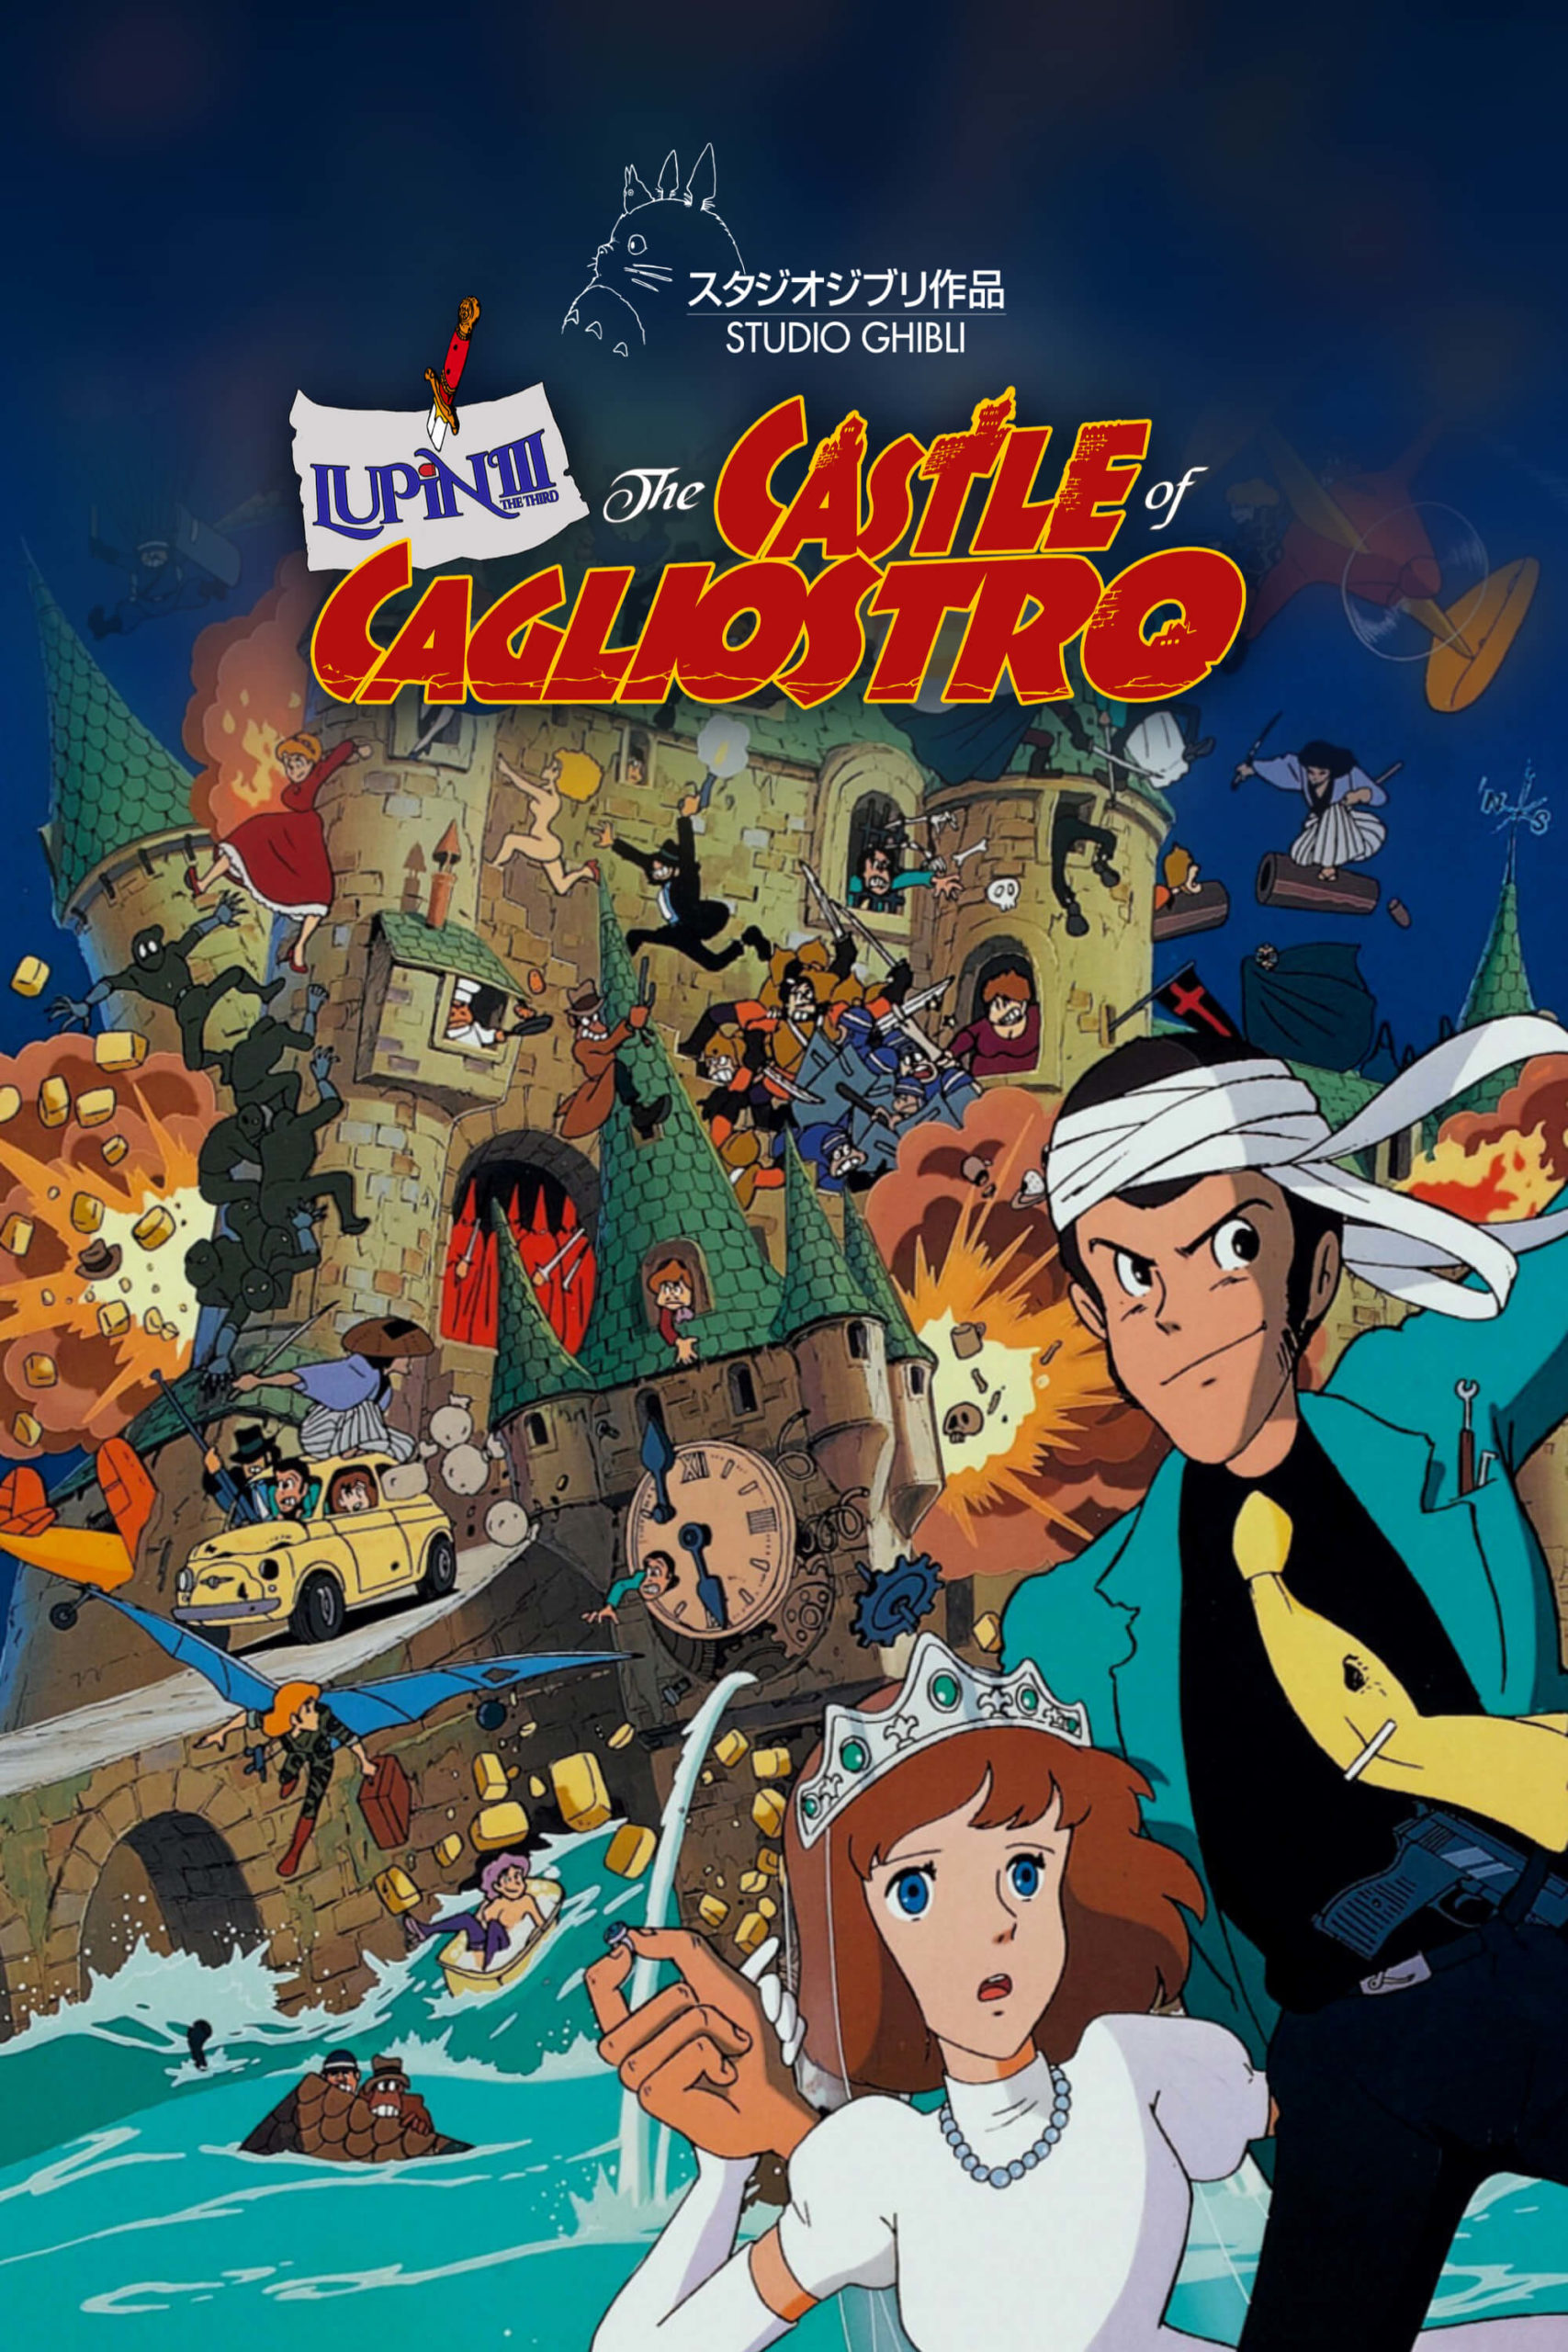 The-Castle-of-Cagliostro-anime-movies